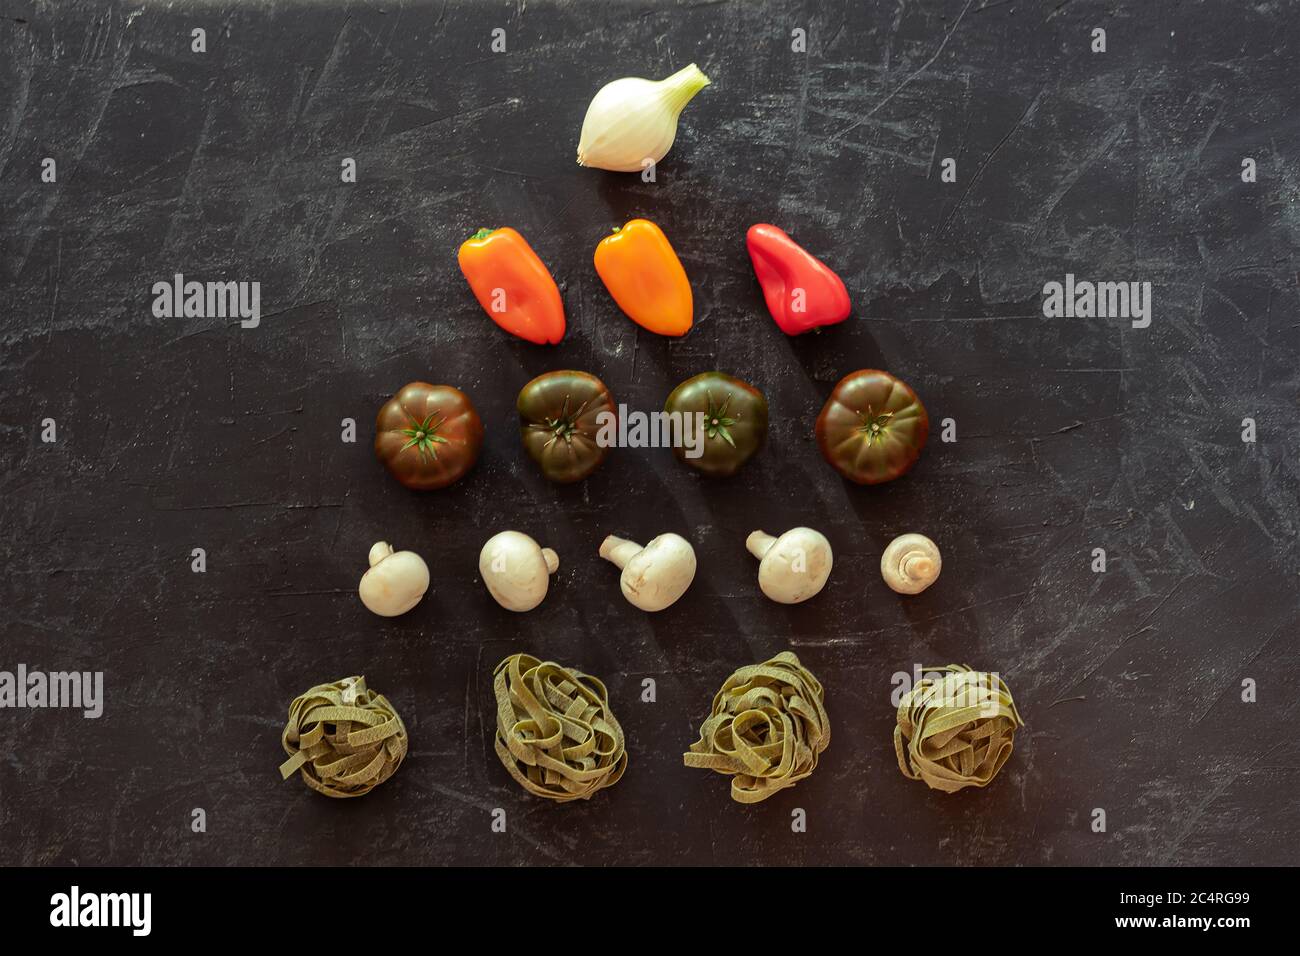 Spaghetti verts, champignons, tomates, poivron et oignon sur fond noir. Nourriture végétalienne. Cuisine italienne. Vue de dessus, plan d'appartement Banque D'Images